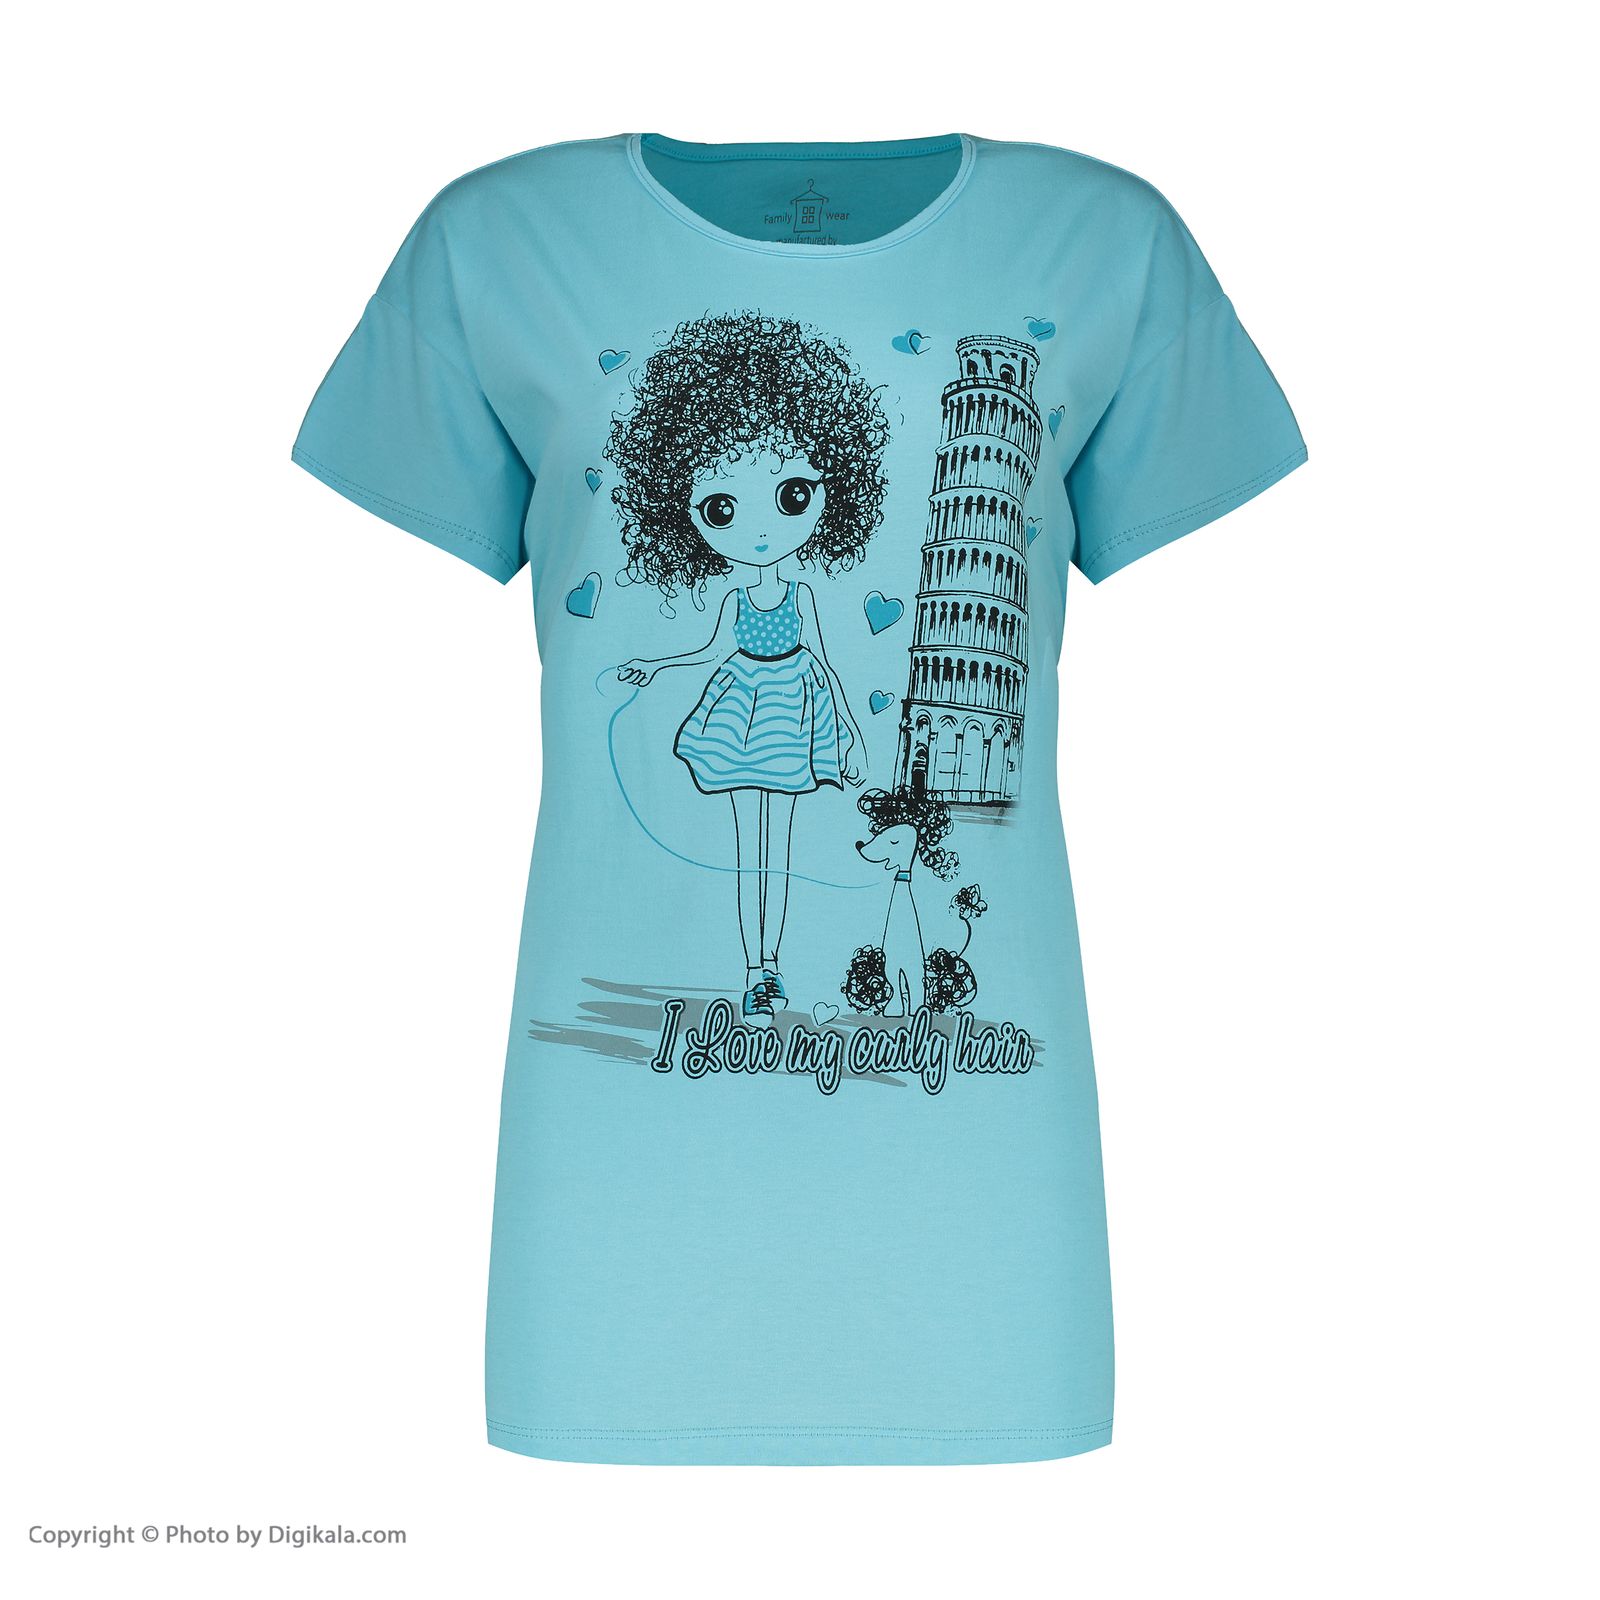 تی شرت آستین کوتاه زنانه فمیلی ور طرح دختر و پیزا کد 0162 رنگ آبی روشن -  - 2